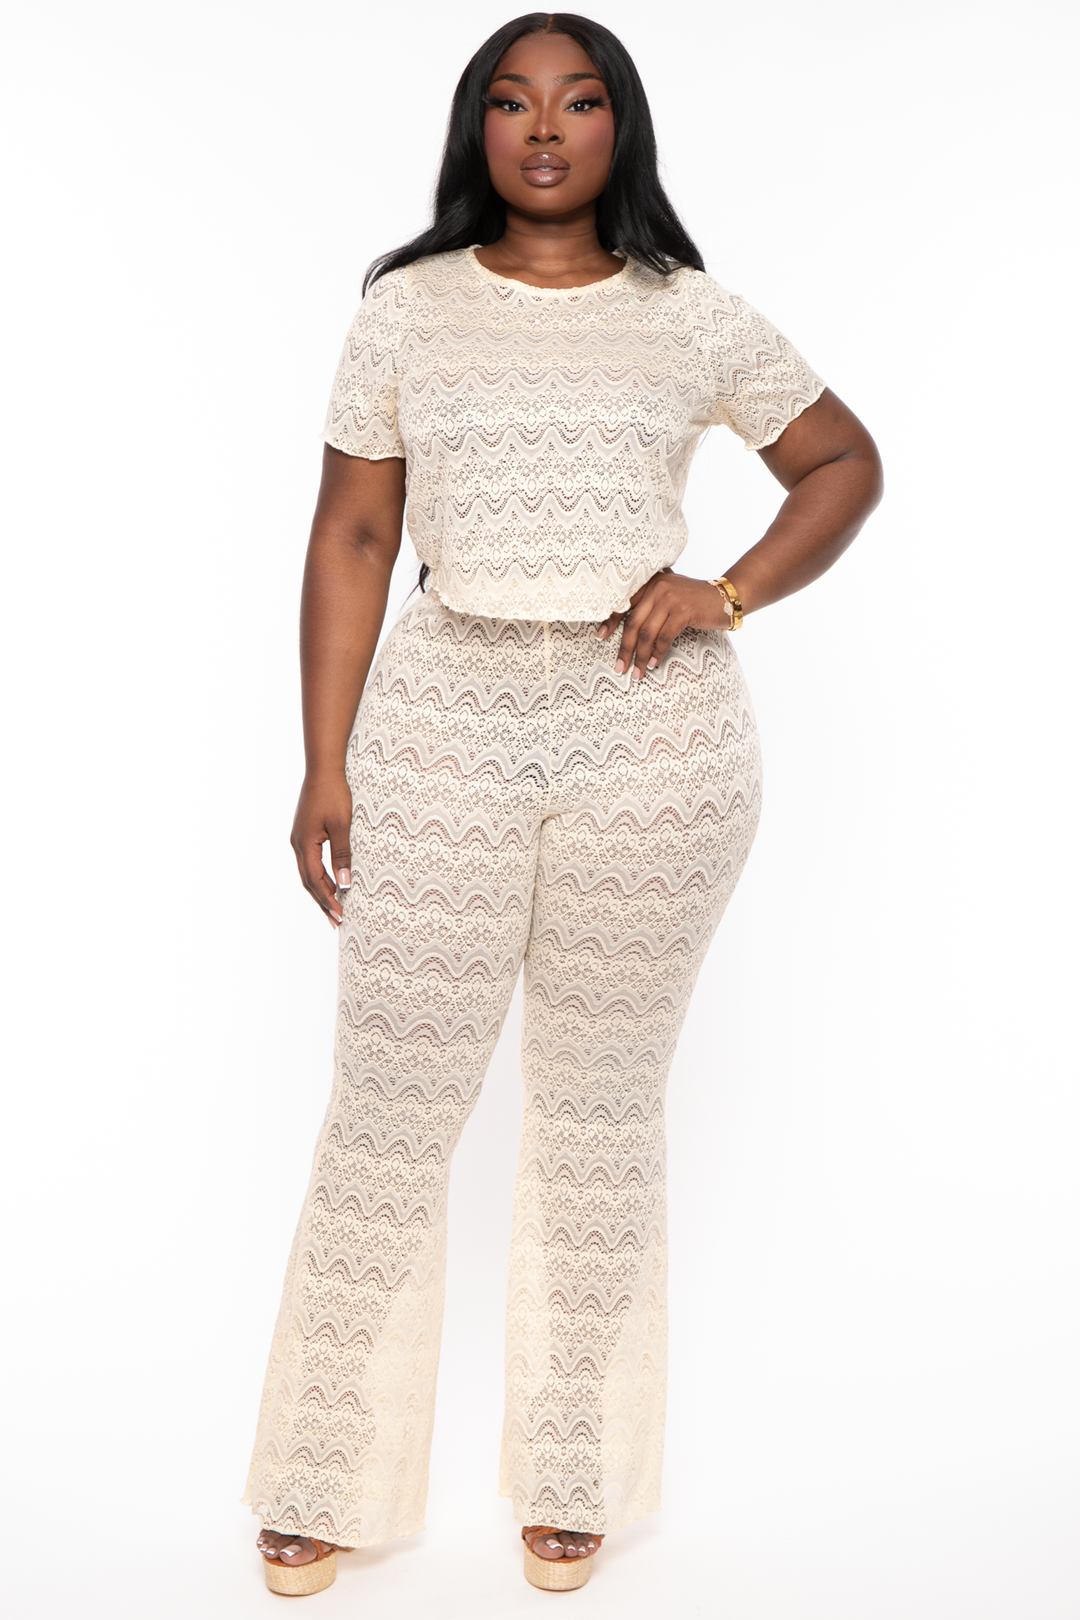 Plus Size Women Tie-Dye Print Crop Top + Pants Two-Piece Set - The